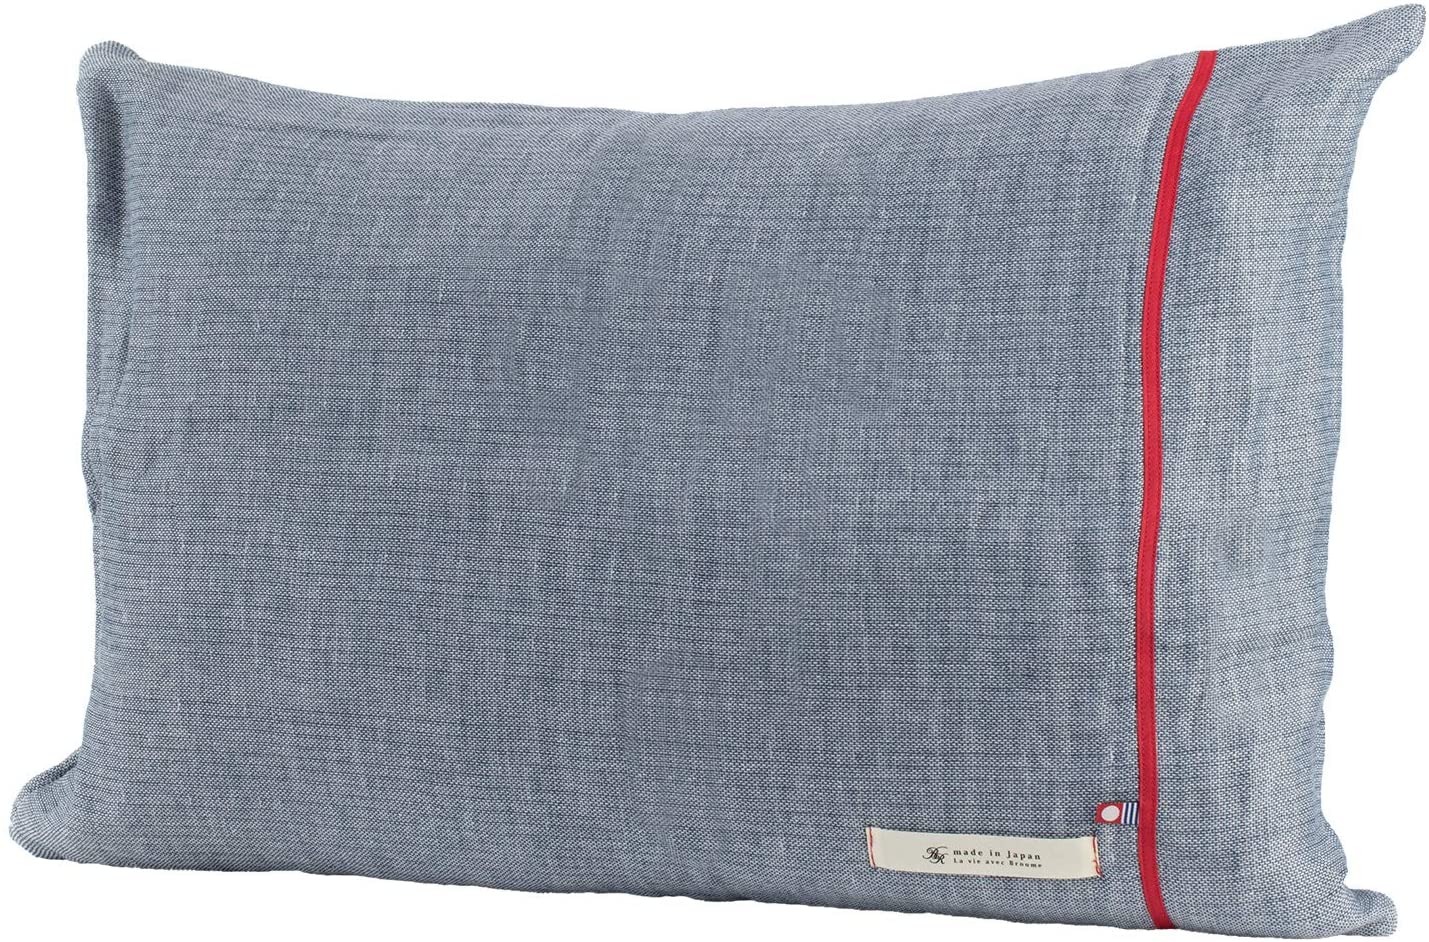 【日本代購】Bloom 今治毛巾 認證 VIREA 枕套 5層紗布 棉100% 柔軟 紗布面料 日本製 藏青色